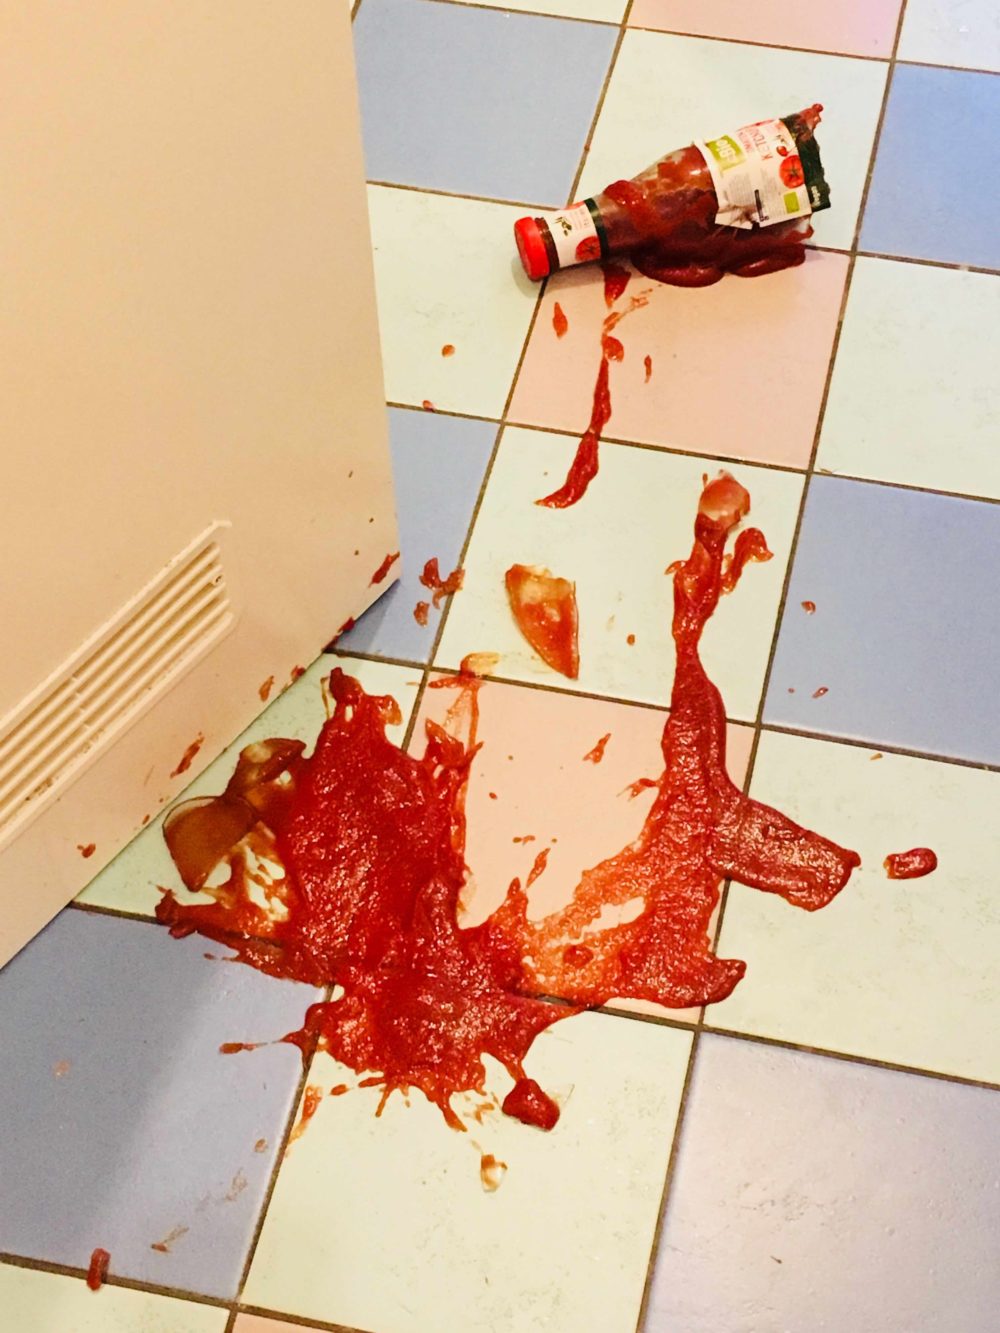 eine Ketchupflasche ist zerbrochen, der Ketchup verteilt sich auf pastellfarbenen Fliesen